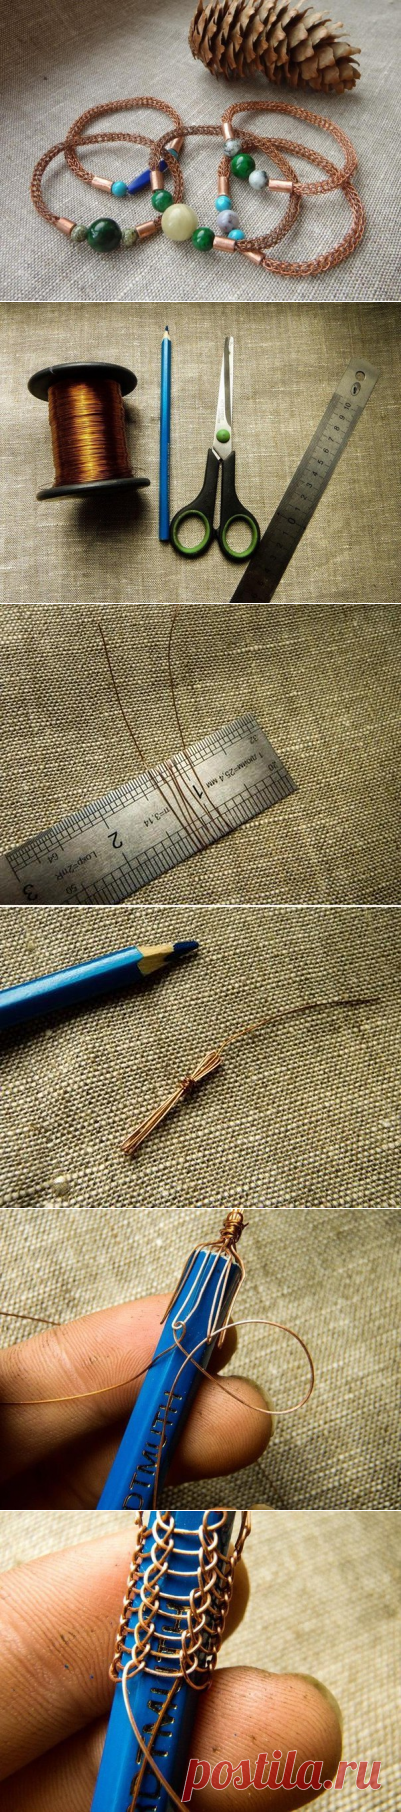 Плетение цепочки в технике viking knit

Viking knit — древний способ плетения цепочки, не требующий пайки звеньев. Цепочка в этой технике плетется из длинного куска проволоки, который наращивается по мере необходимости.